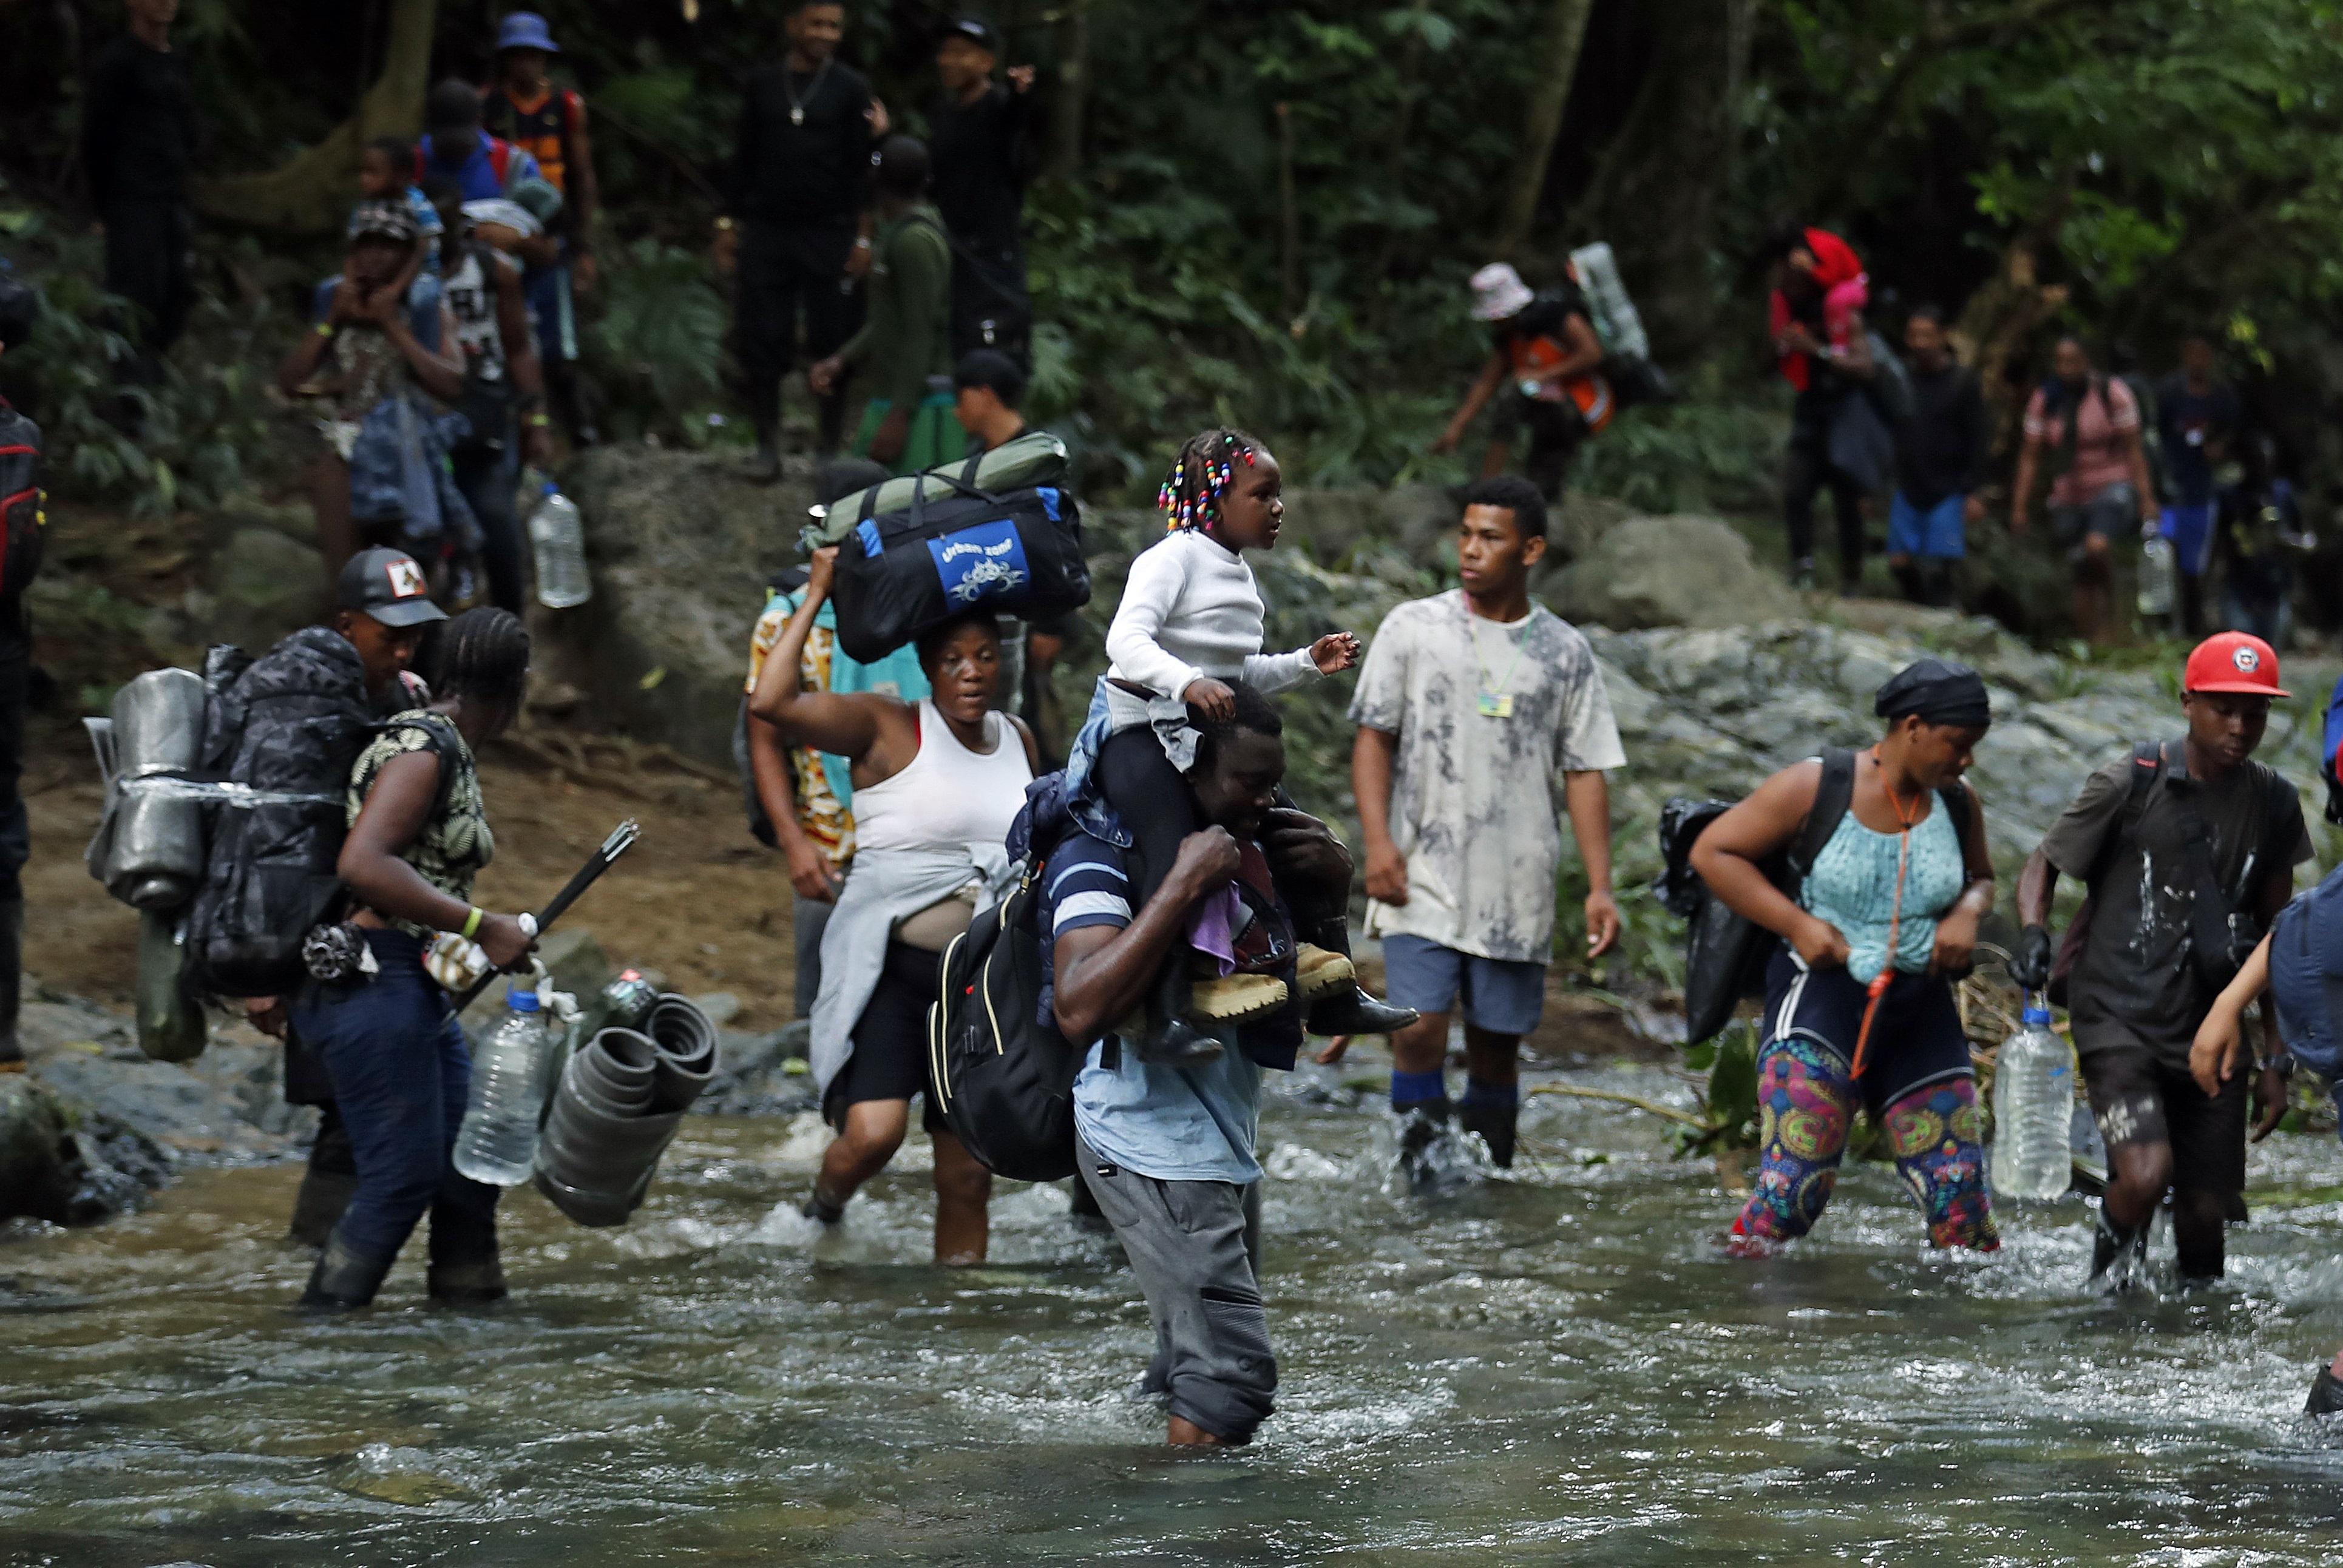 Colombia registró un récord de 106.838 migrantes, el número más alto de visitantes en los últimos 15 años  EFE/ Mauricio Dueñas Castañeda
